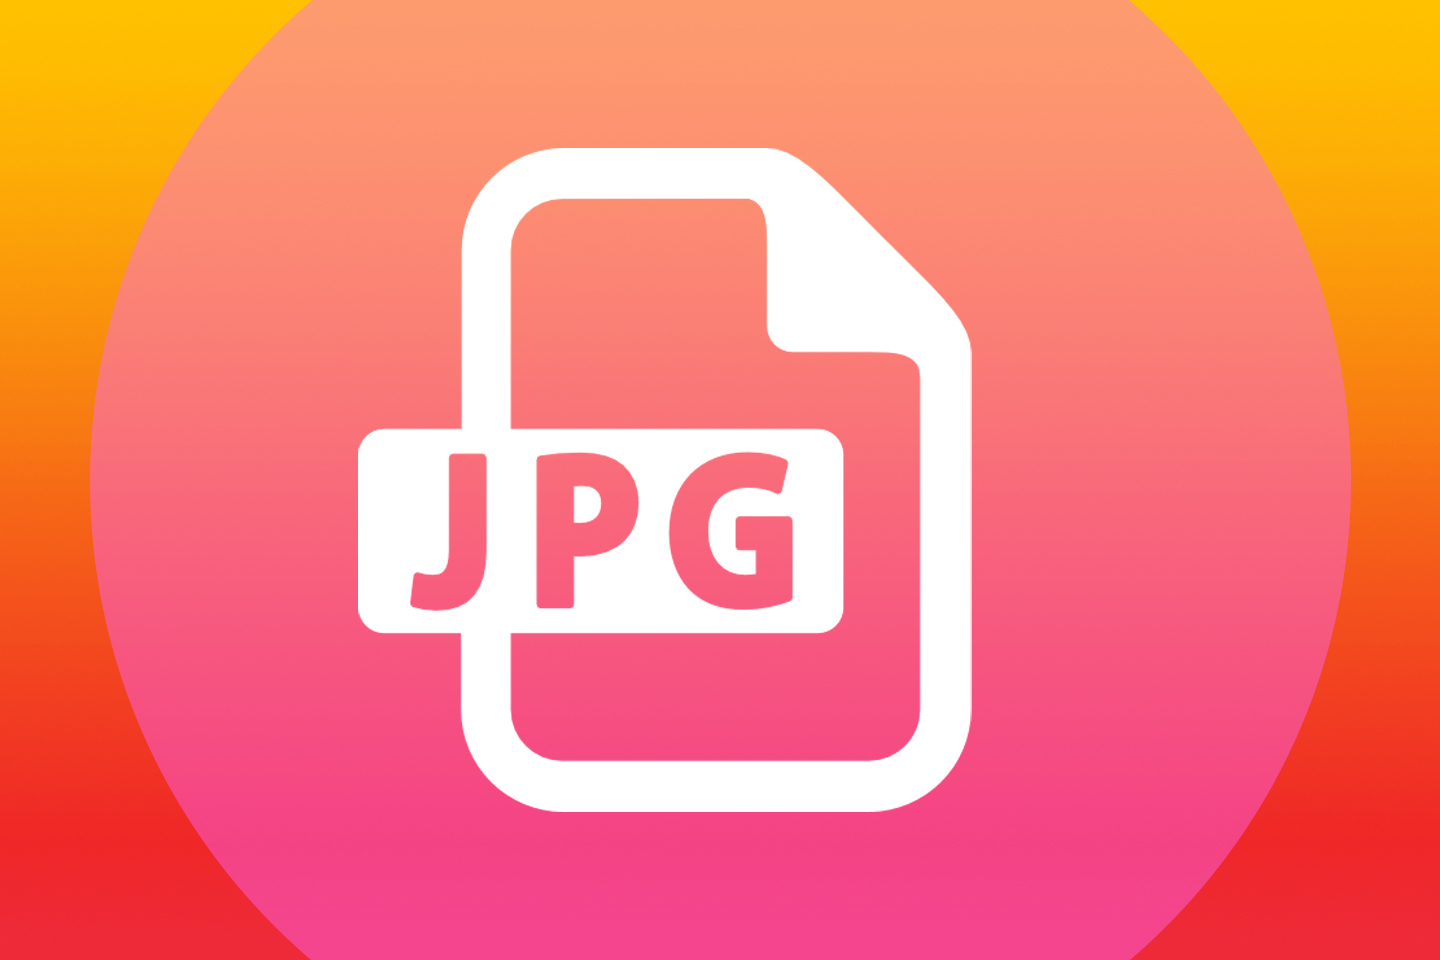 JPEG XL, un nuovo standard per le immagini digitali